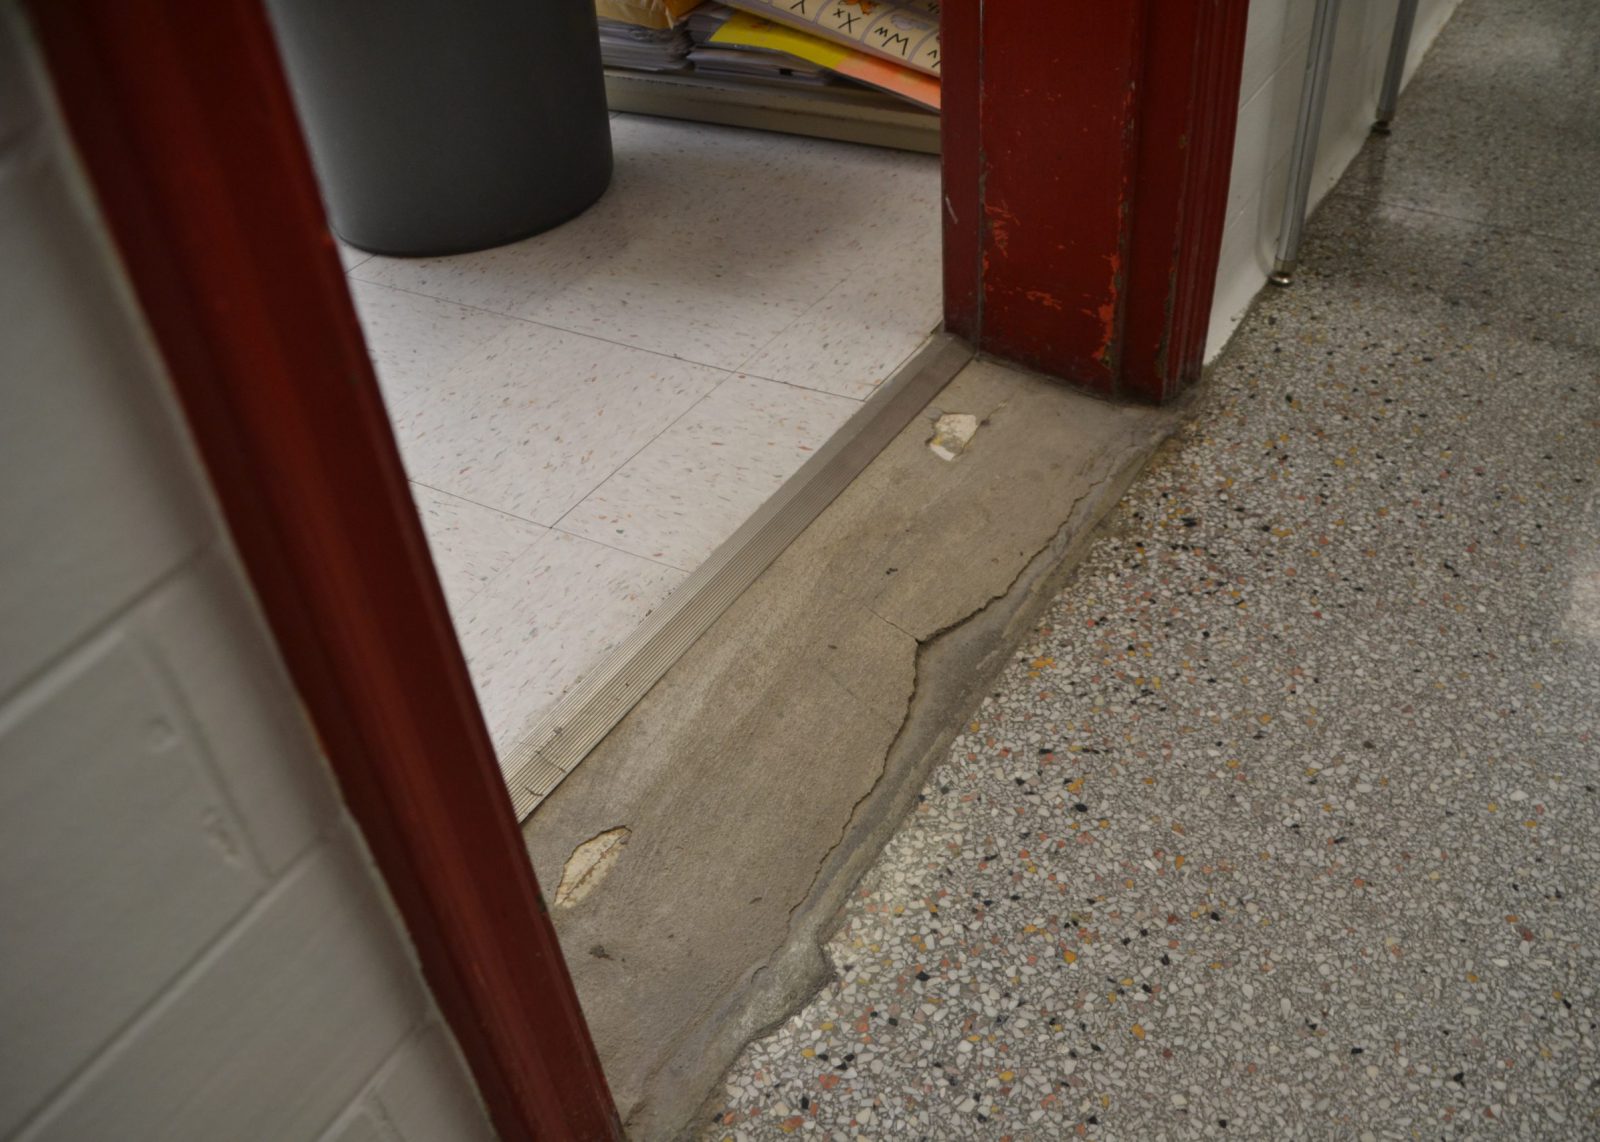 Deterioration in classroom entry way at Van Antwerp